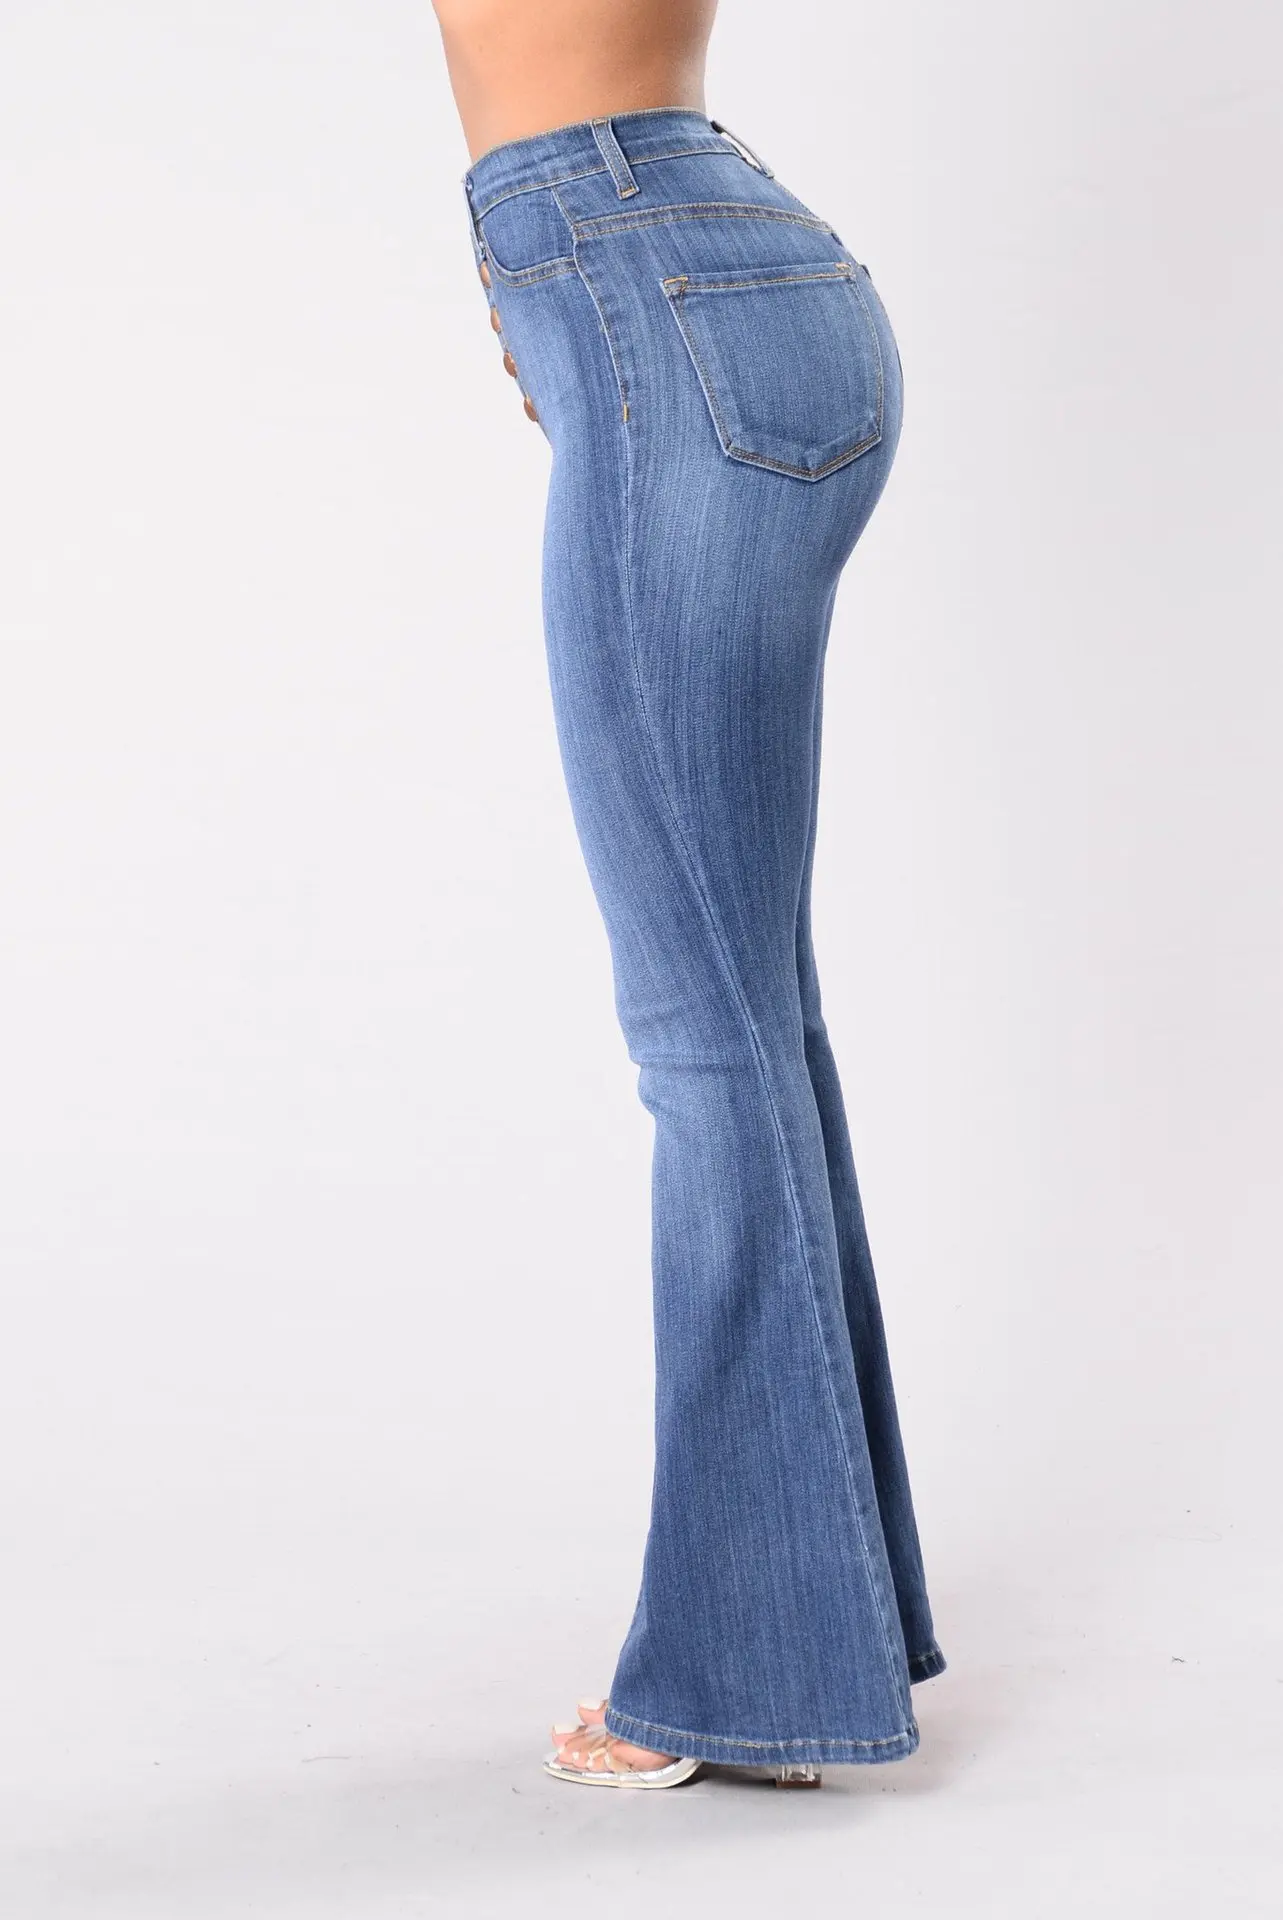 Узкие Стрейчевые джинсы с высокой талией женские винтажные длинные широкие расклешенные джинсы обтягивающие расклешенные брюки